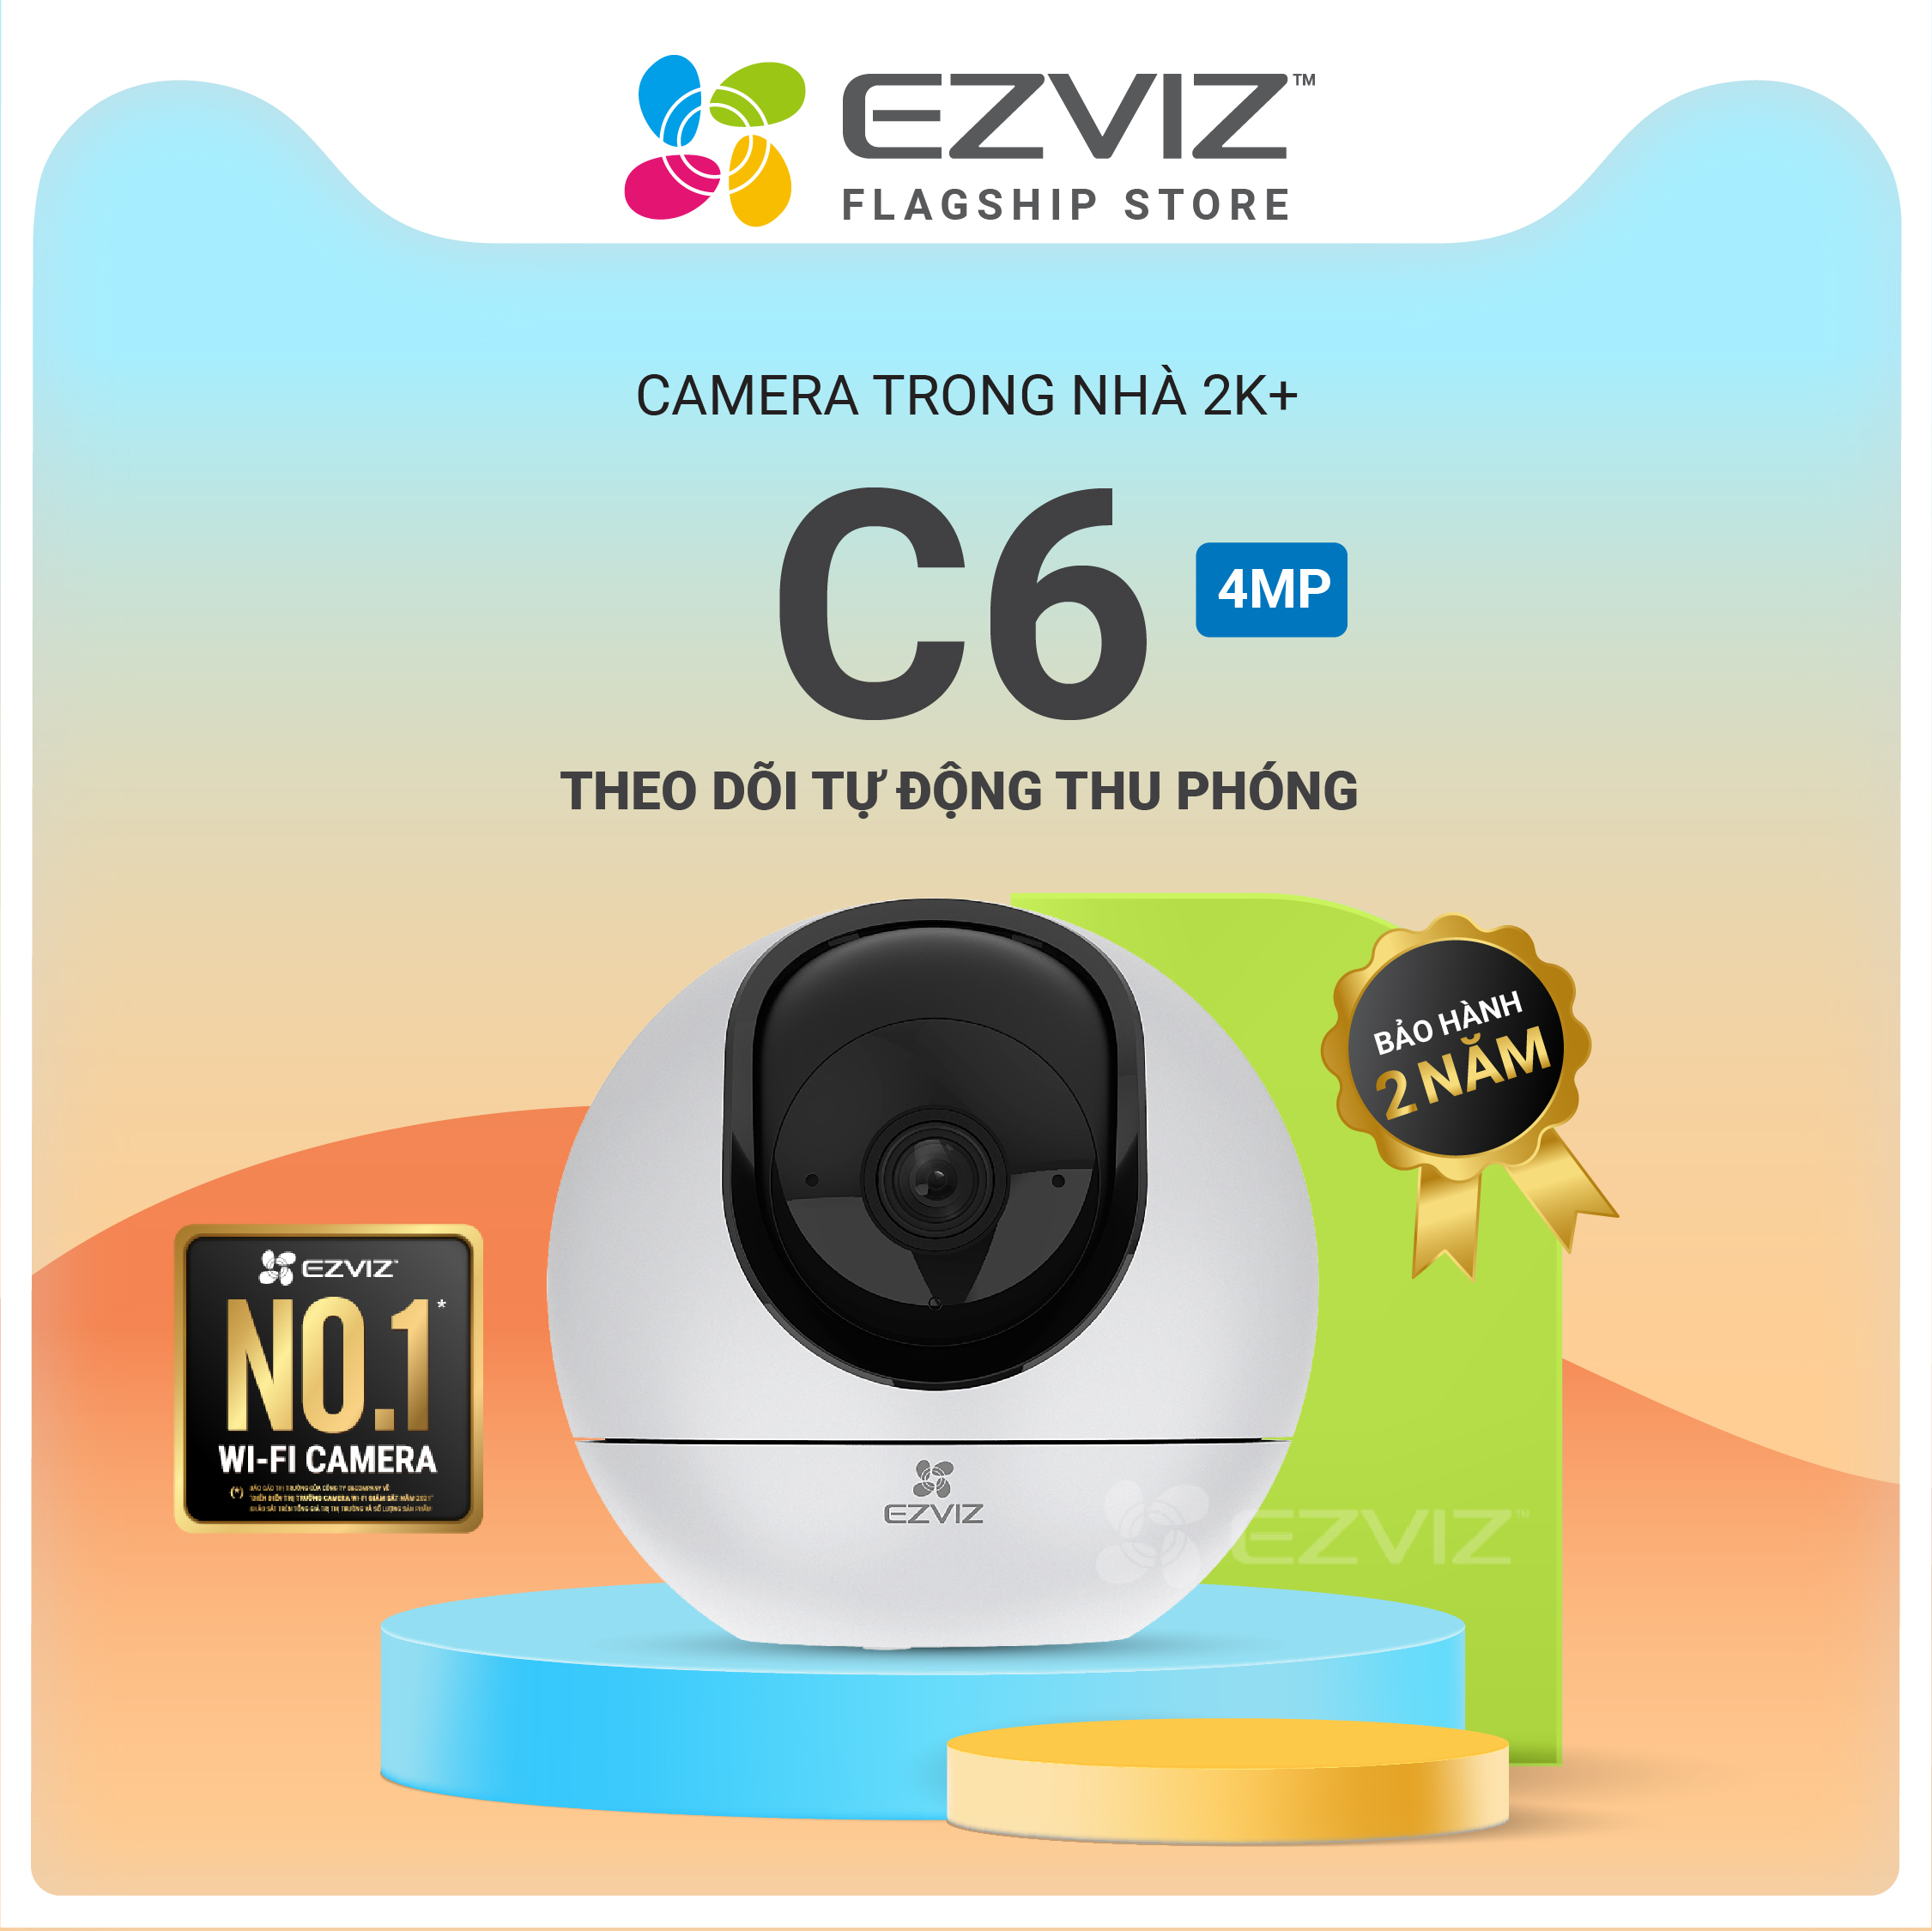 Camera WI-FI EZVIZ C6 2k+, Trong Nhà , 4MP, Quay Quét 360 Độ ,Đàm Thoại 2 Chiều-Hàng Chính Hãng